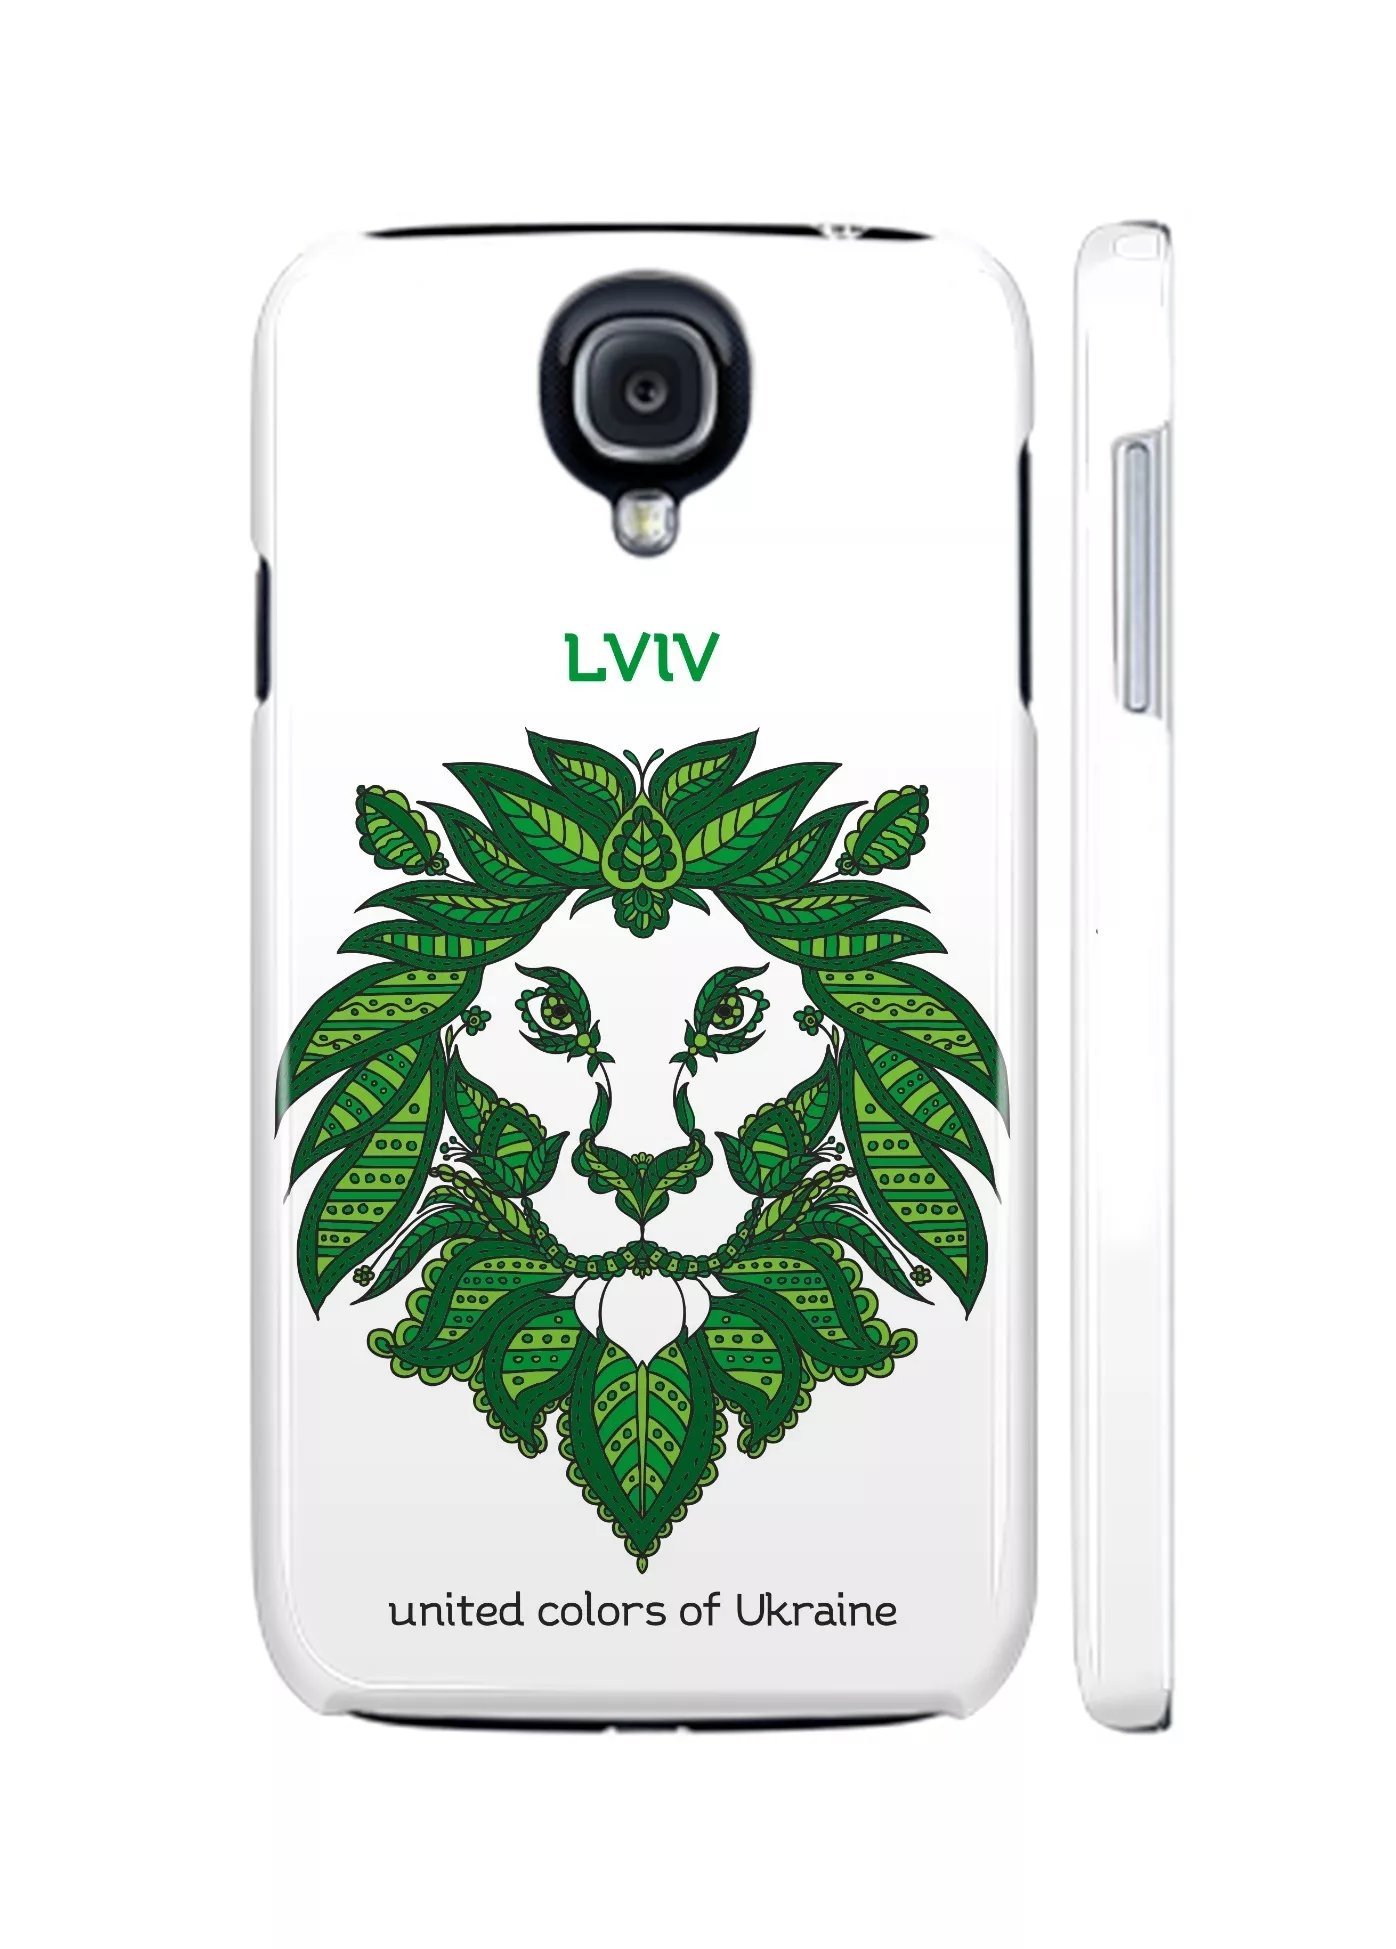 Лев в украинском стиле для Galaxy S4